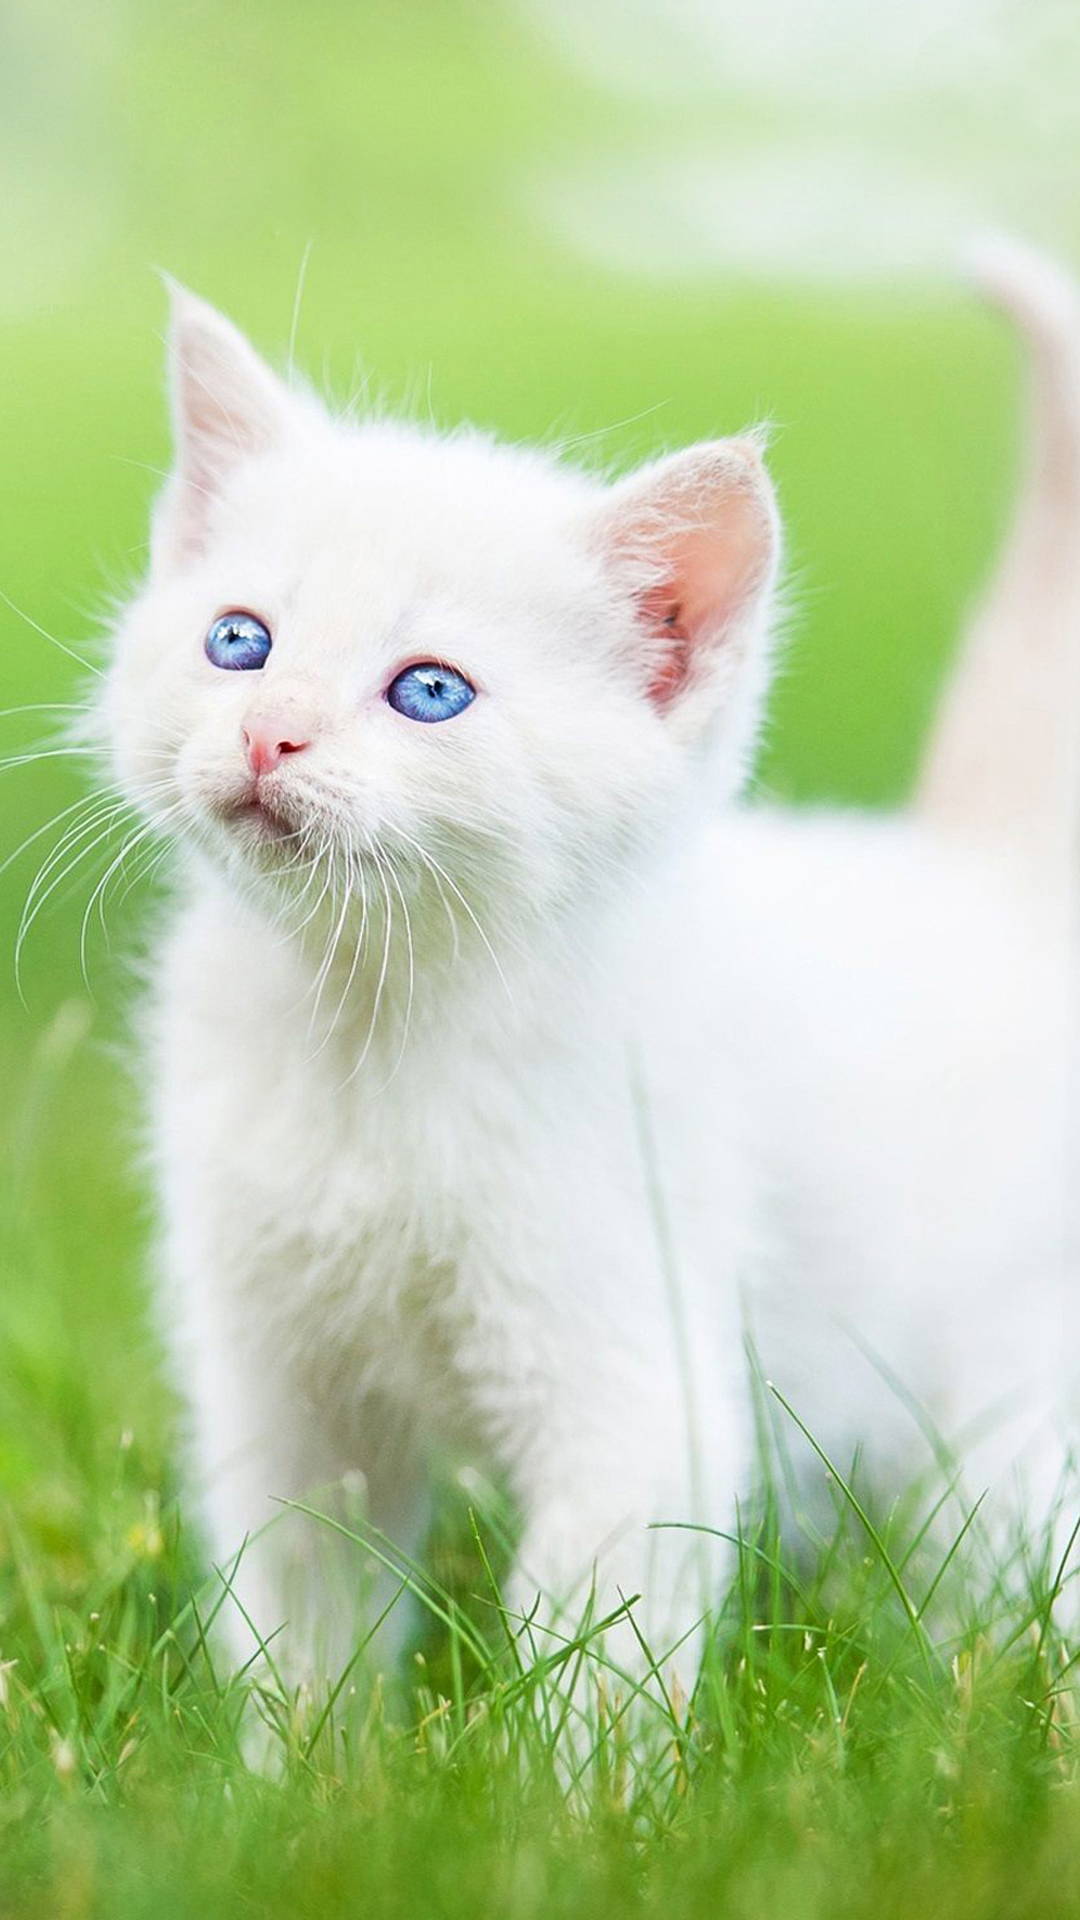 Hình ảnh mèo con cute dễ thương, đáng yêu nhất - 1 phút tiết kiệm triệu niềm vui